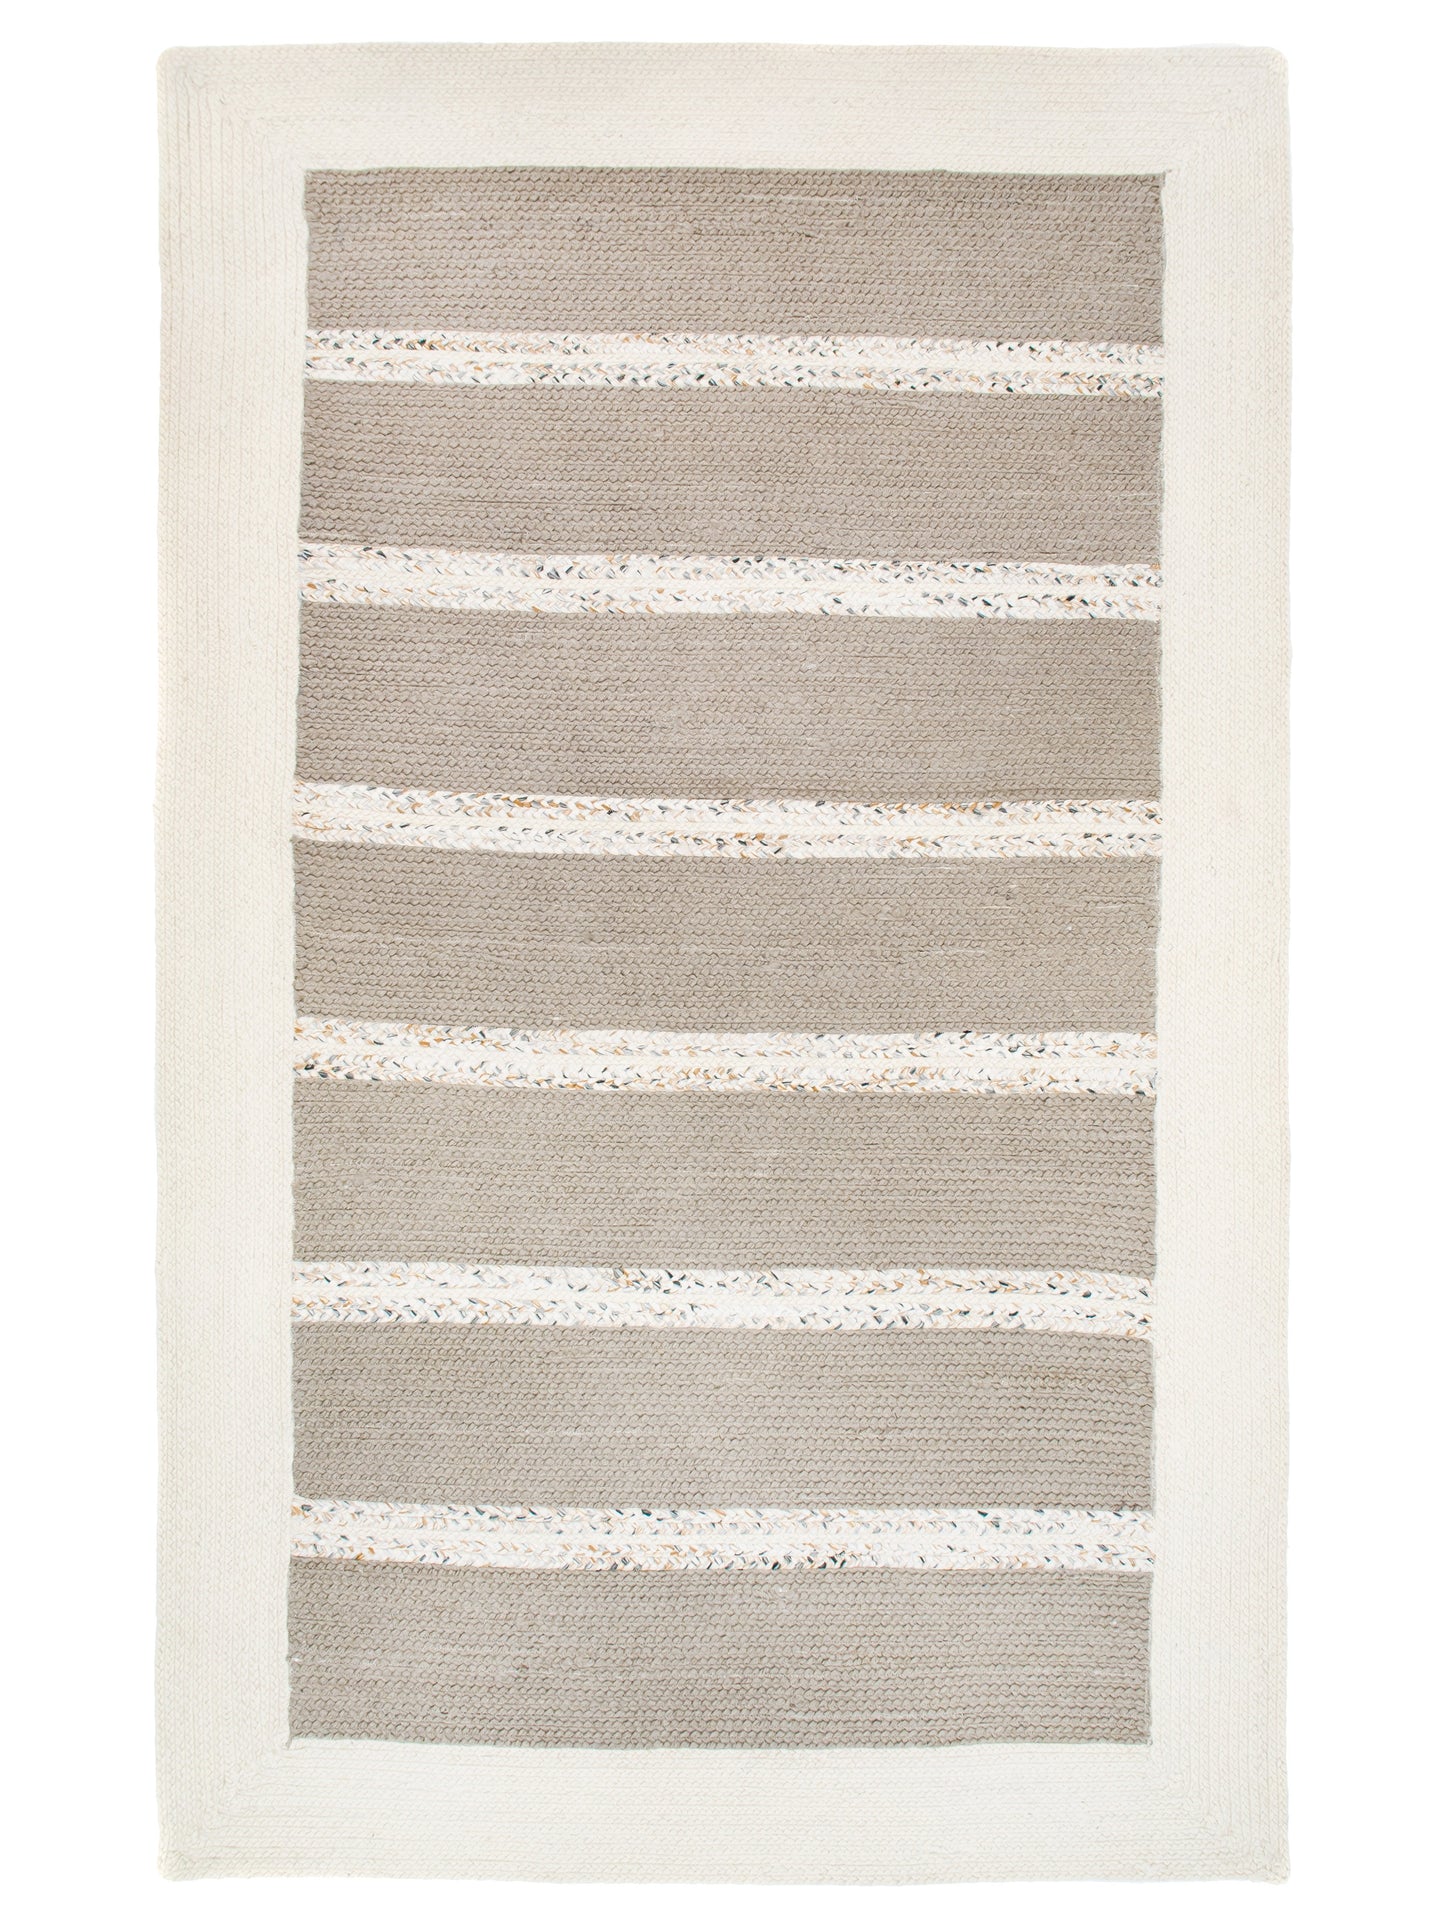 Indian Flat Woven Kilim Rug Grey White product image #29695228903594